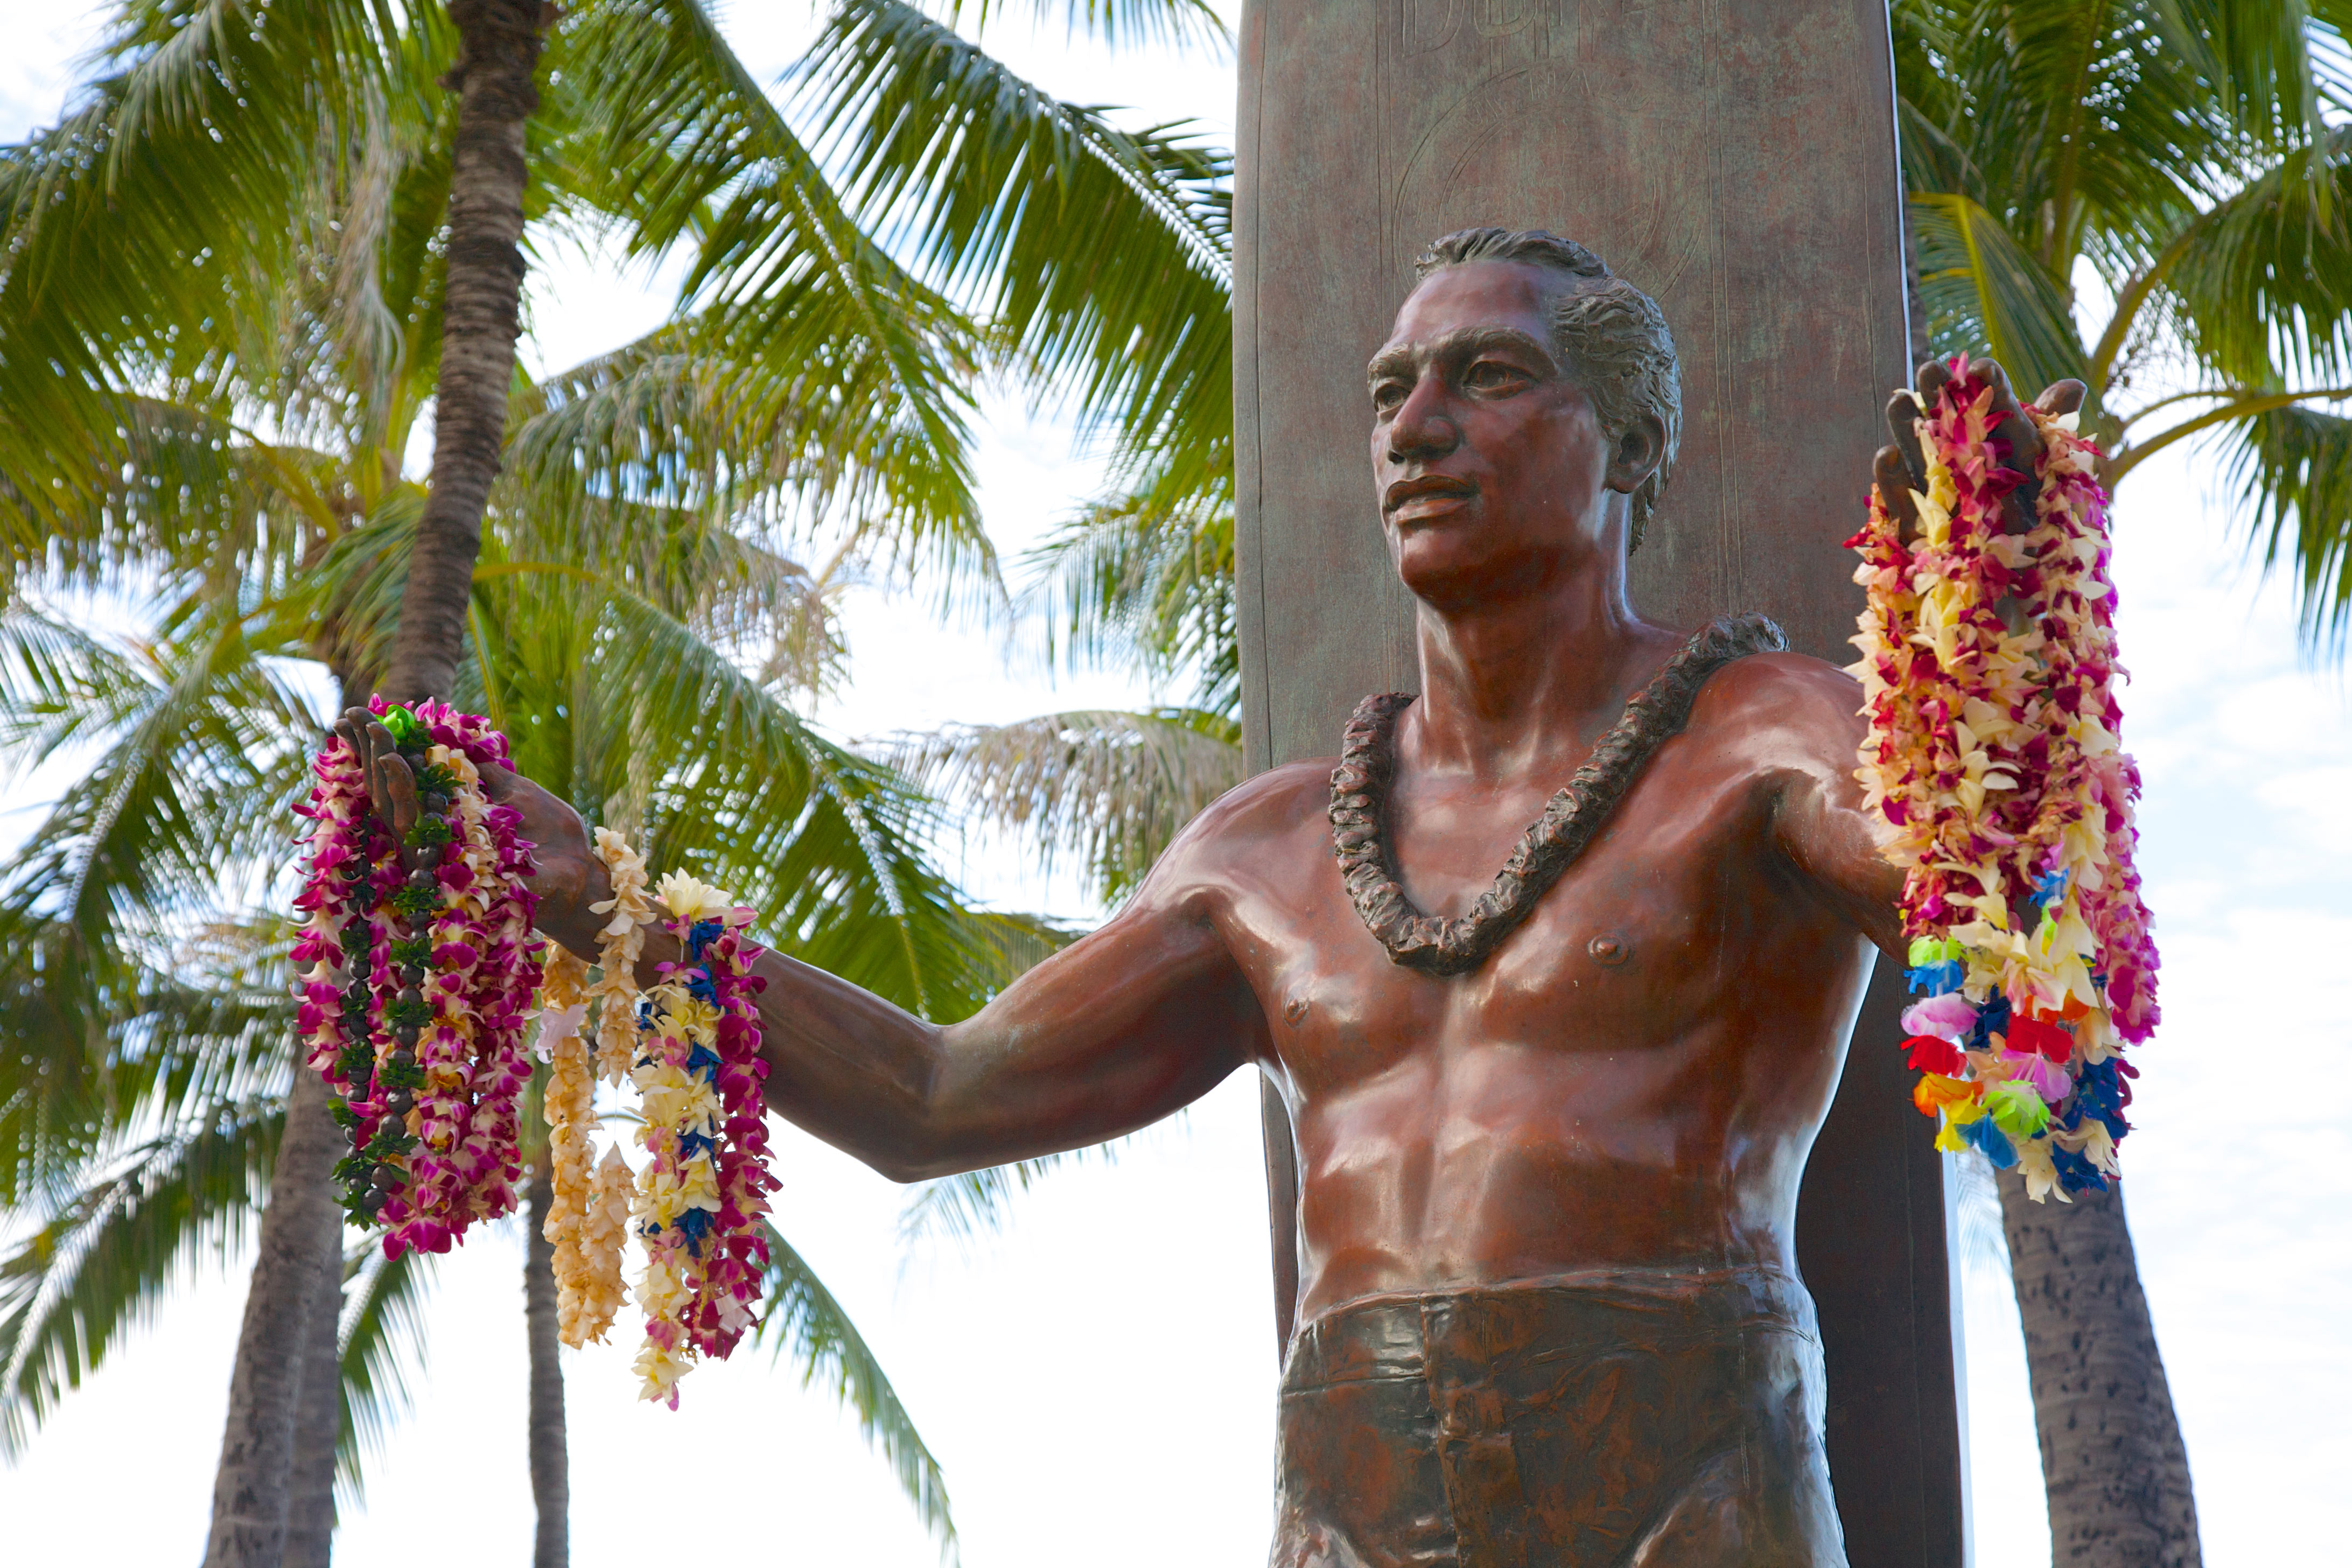 Statue of surf legend Duke Kahanamoku in Waikiki, O'ahu. Image by Barry Winiker / Getty